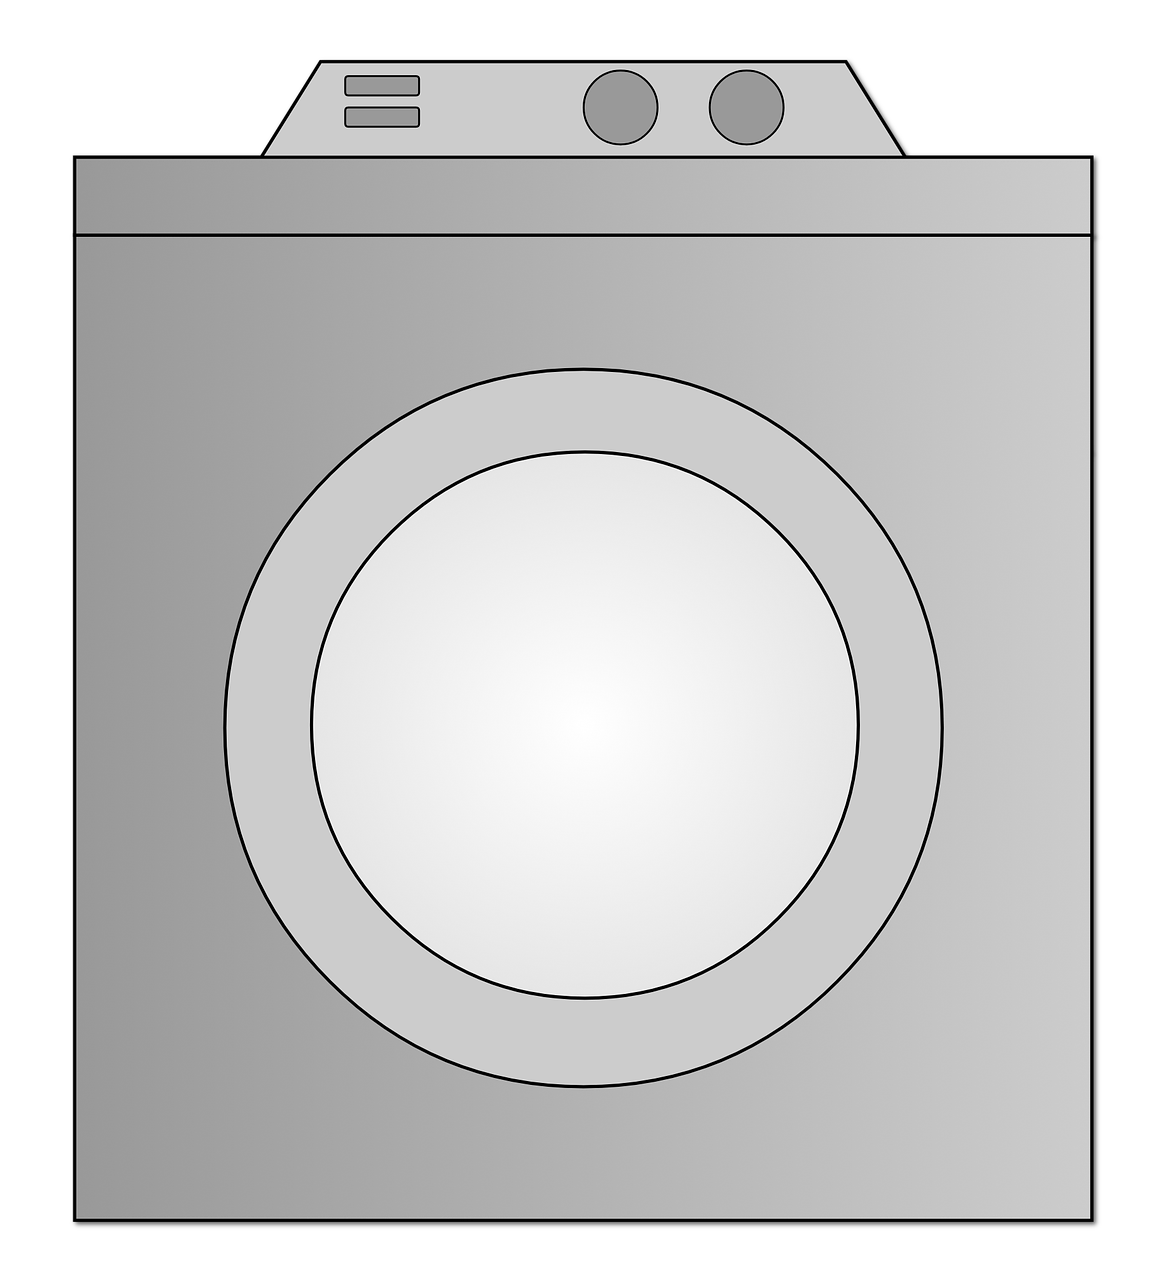 washing machine washer centrifugal free photo